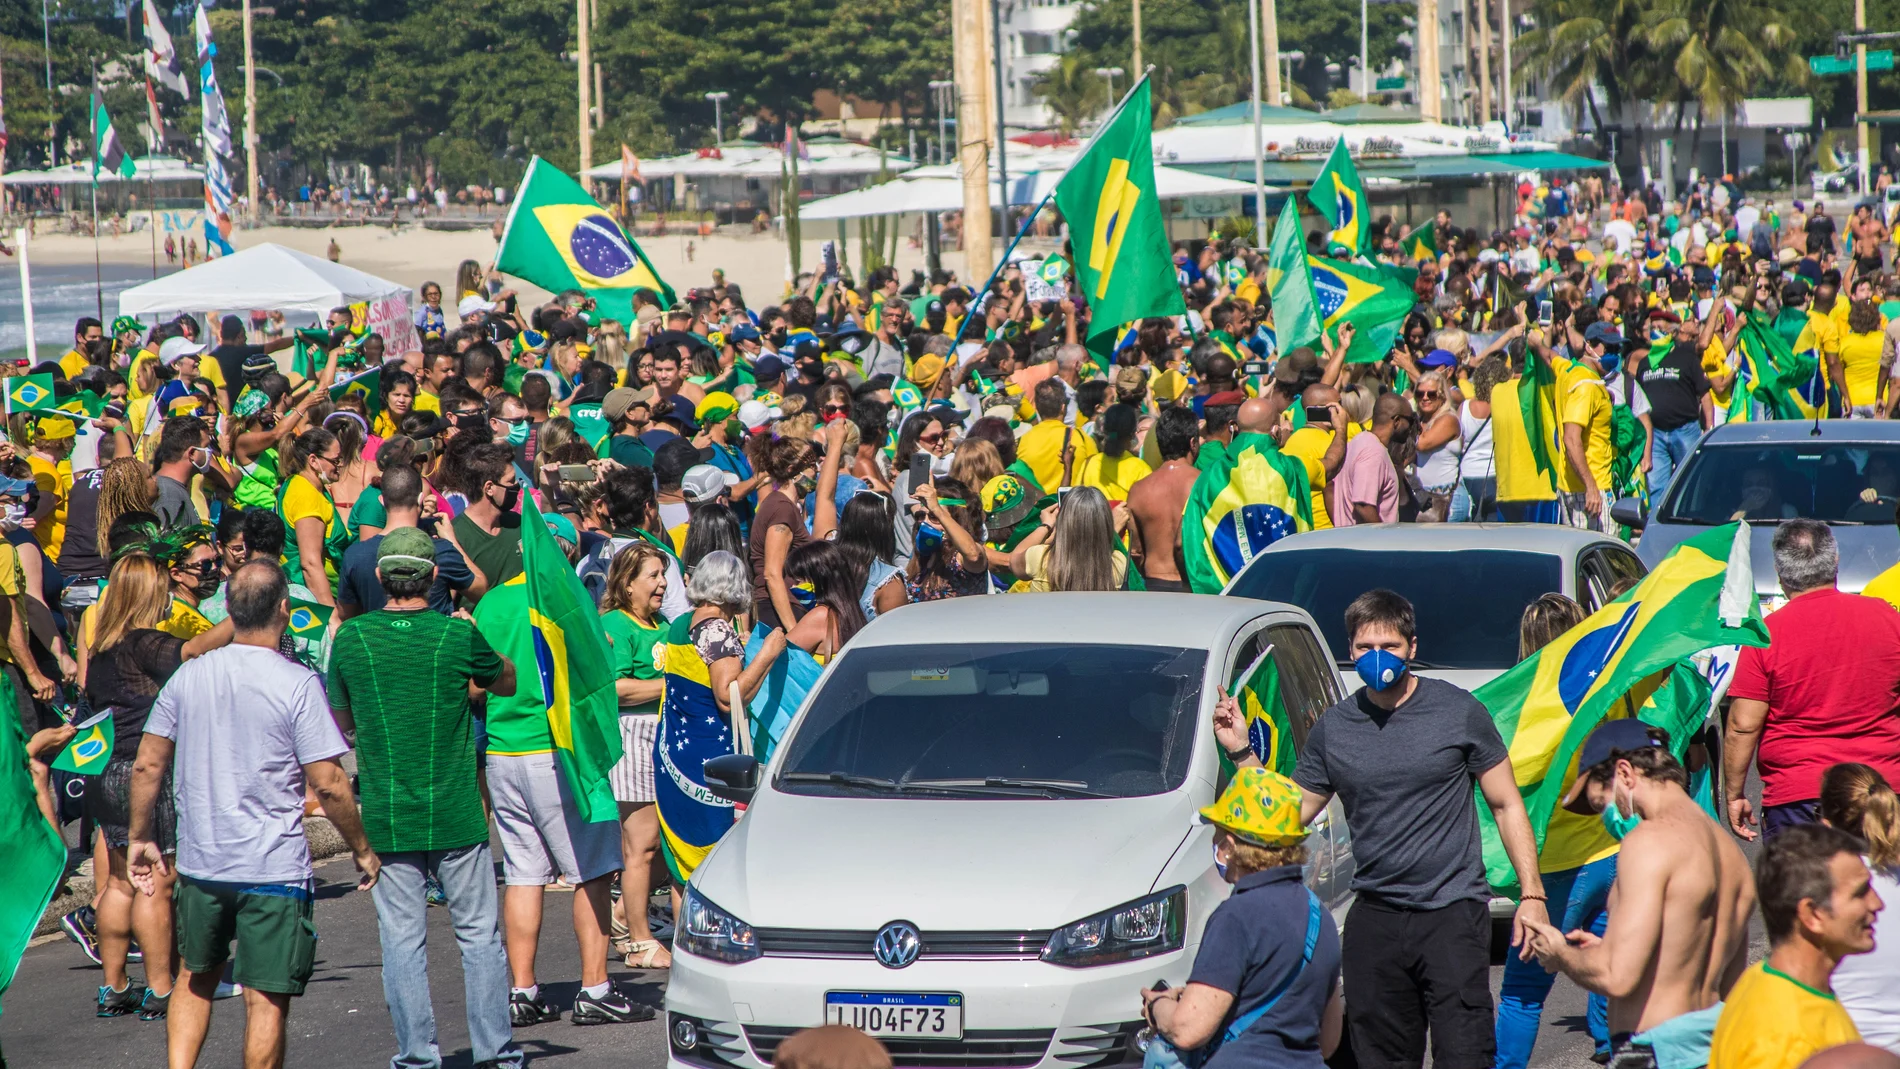 Bolsonaro supporters march to Supreme Court in Brazil